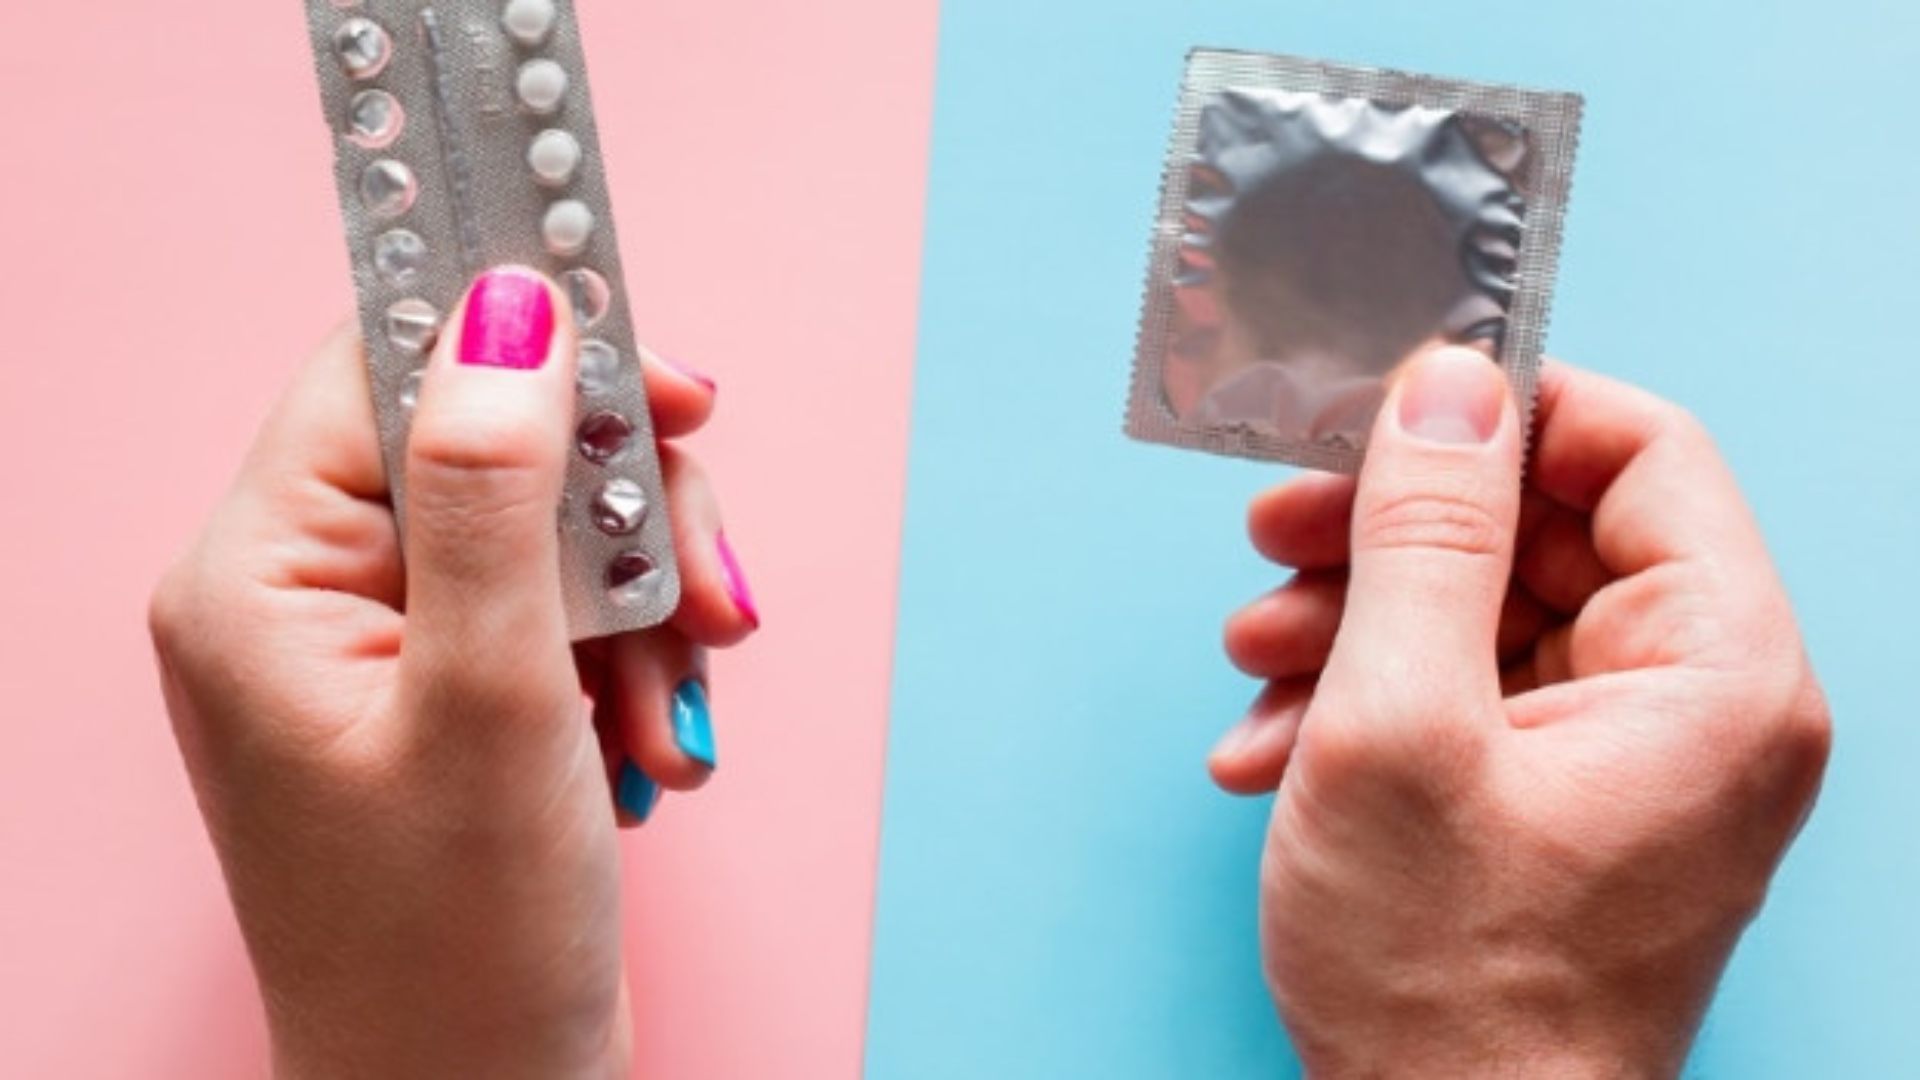 Los hondureños tendrán acceso gratis a condones, pastillas anticonceptivas y otros métodos